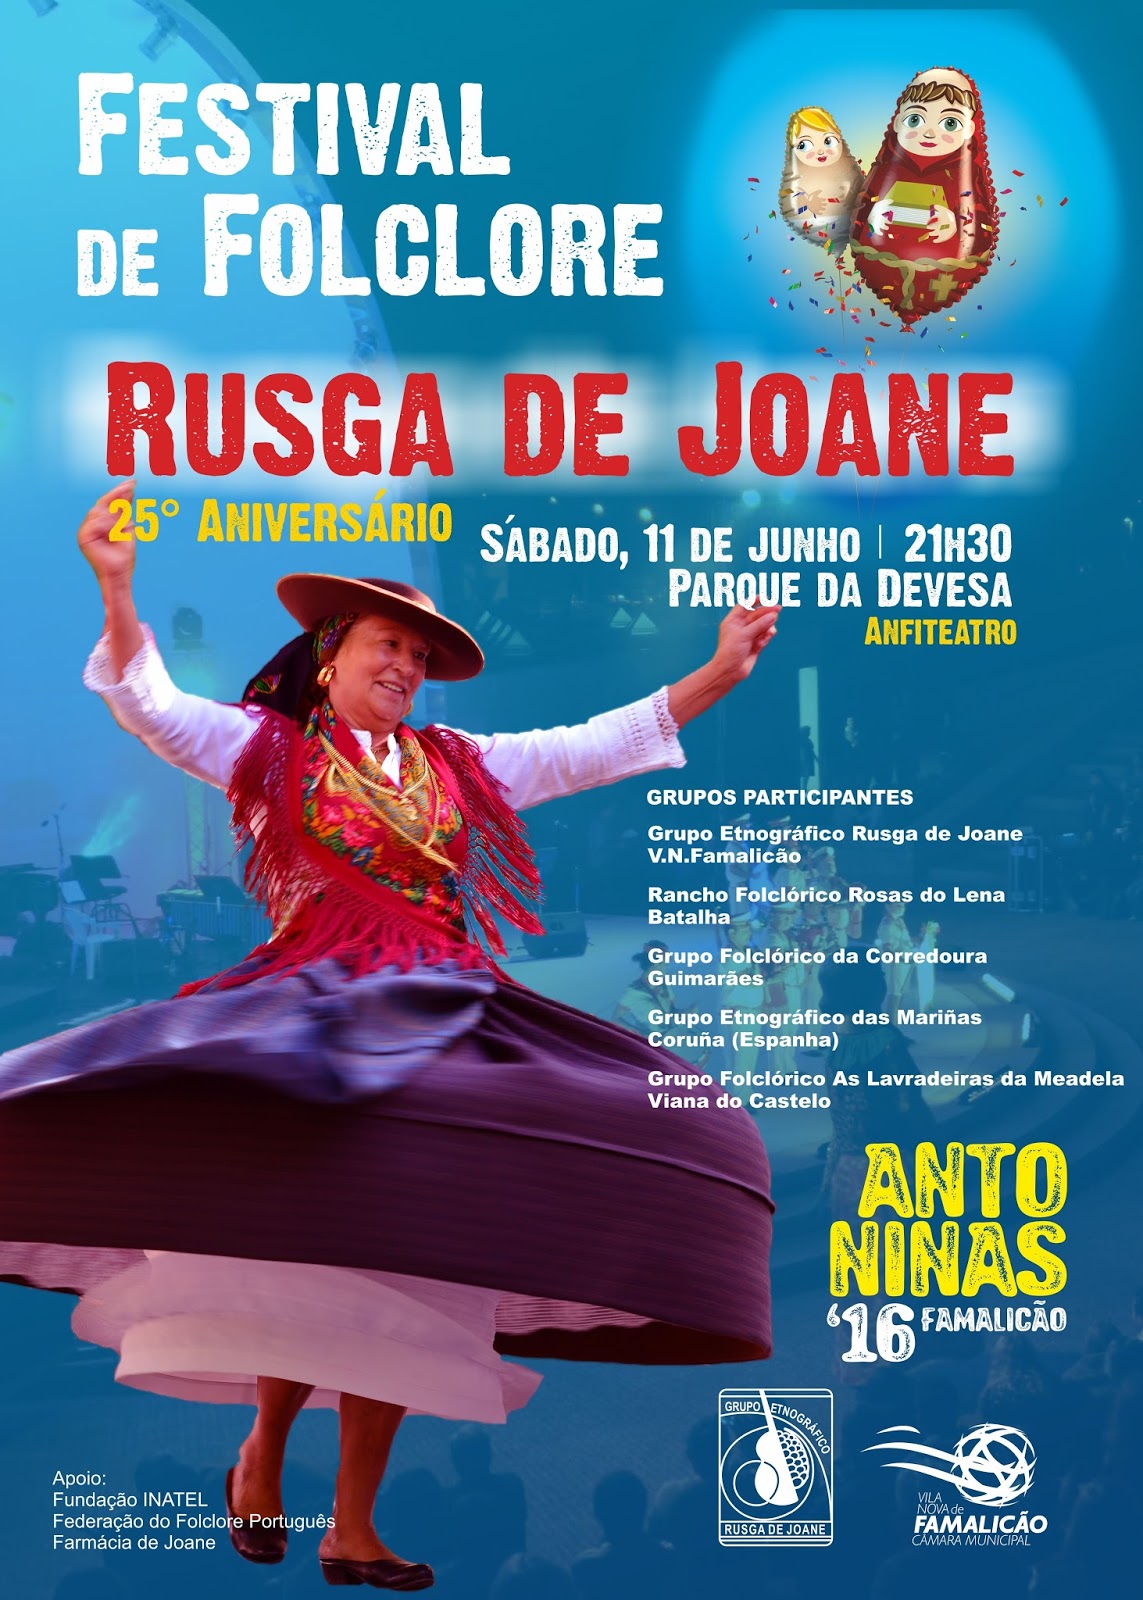 Grupo Etnográfico Rusga Joane: 2016